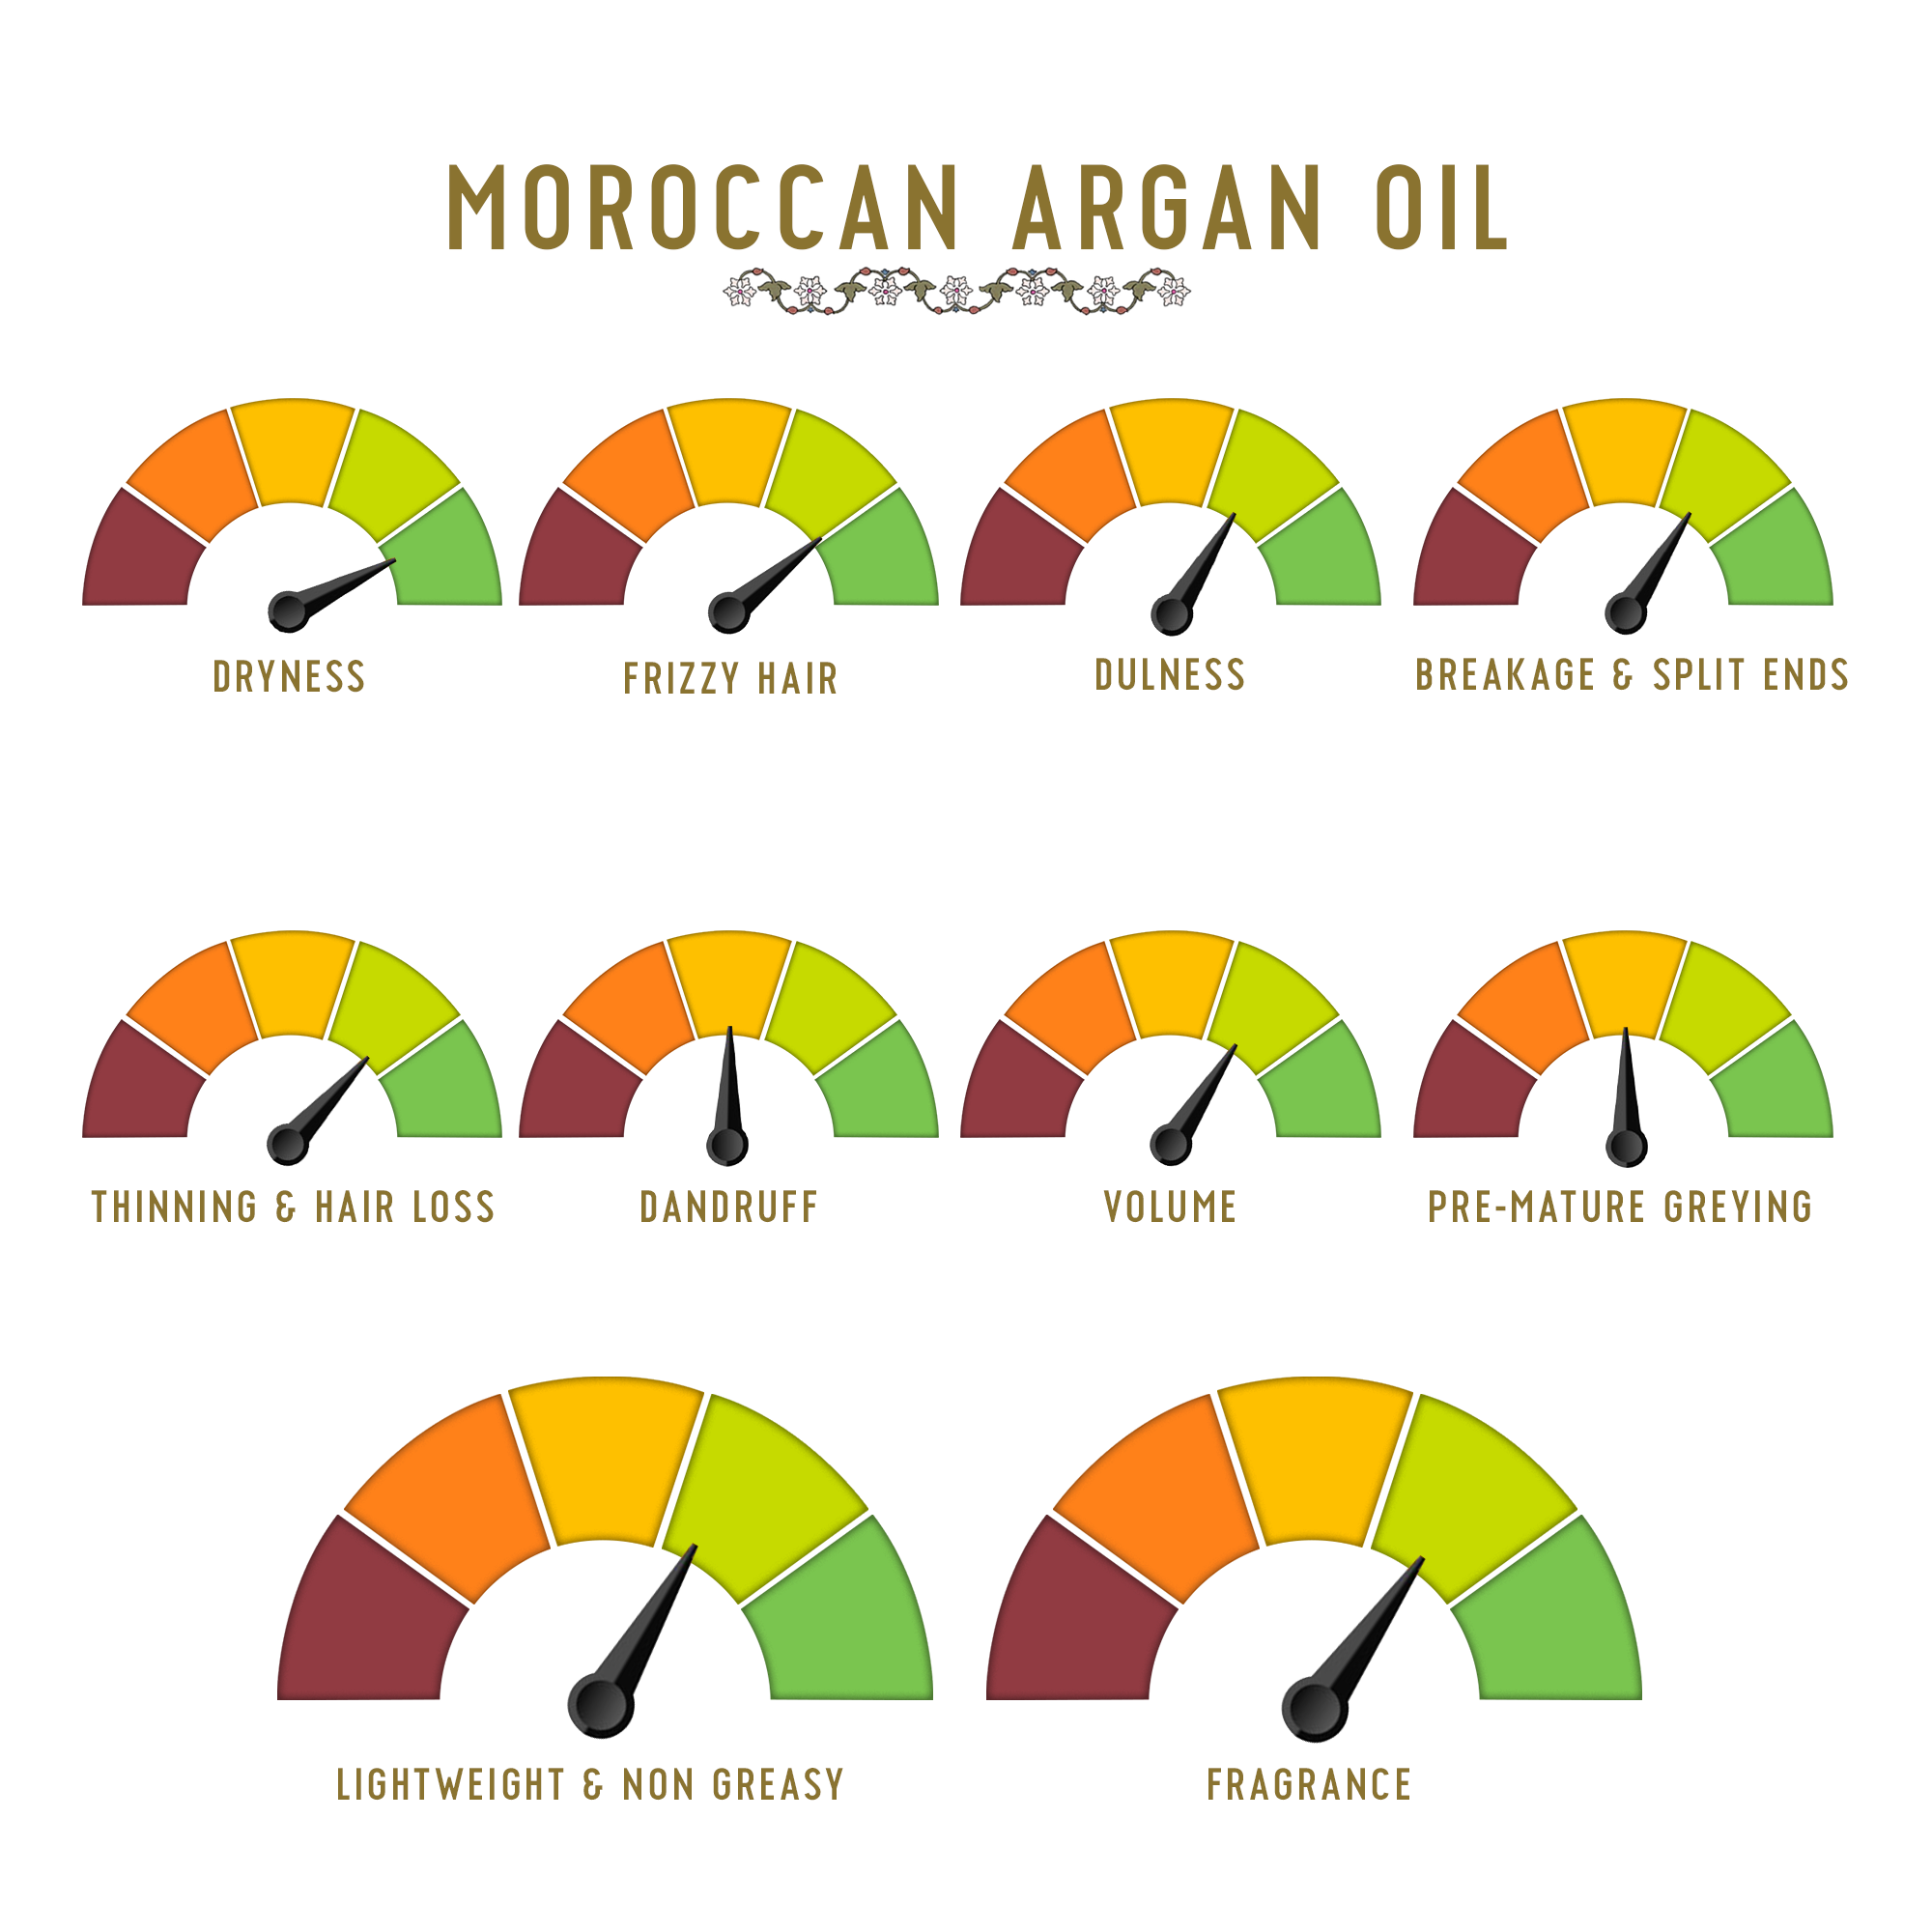 Morrocan Argan Oil Benefits